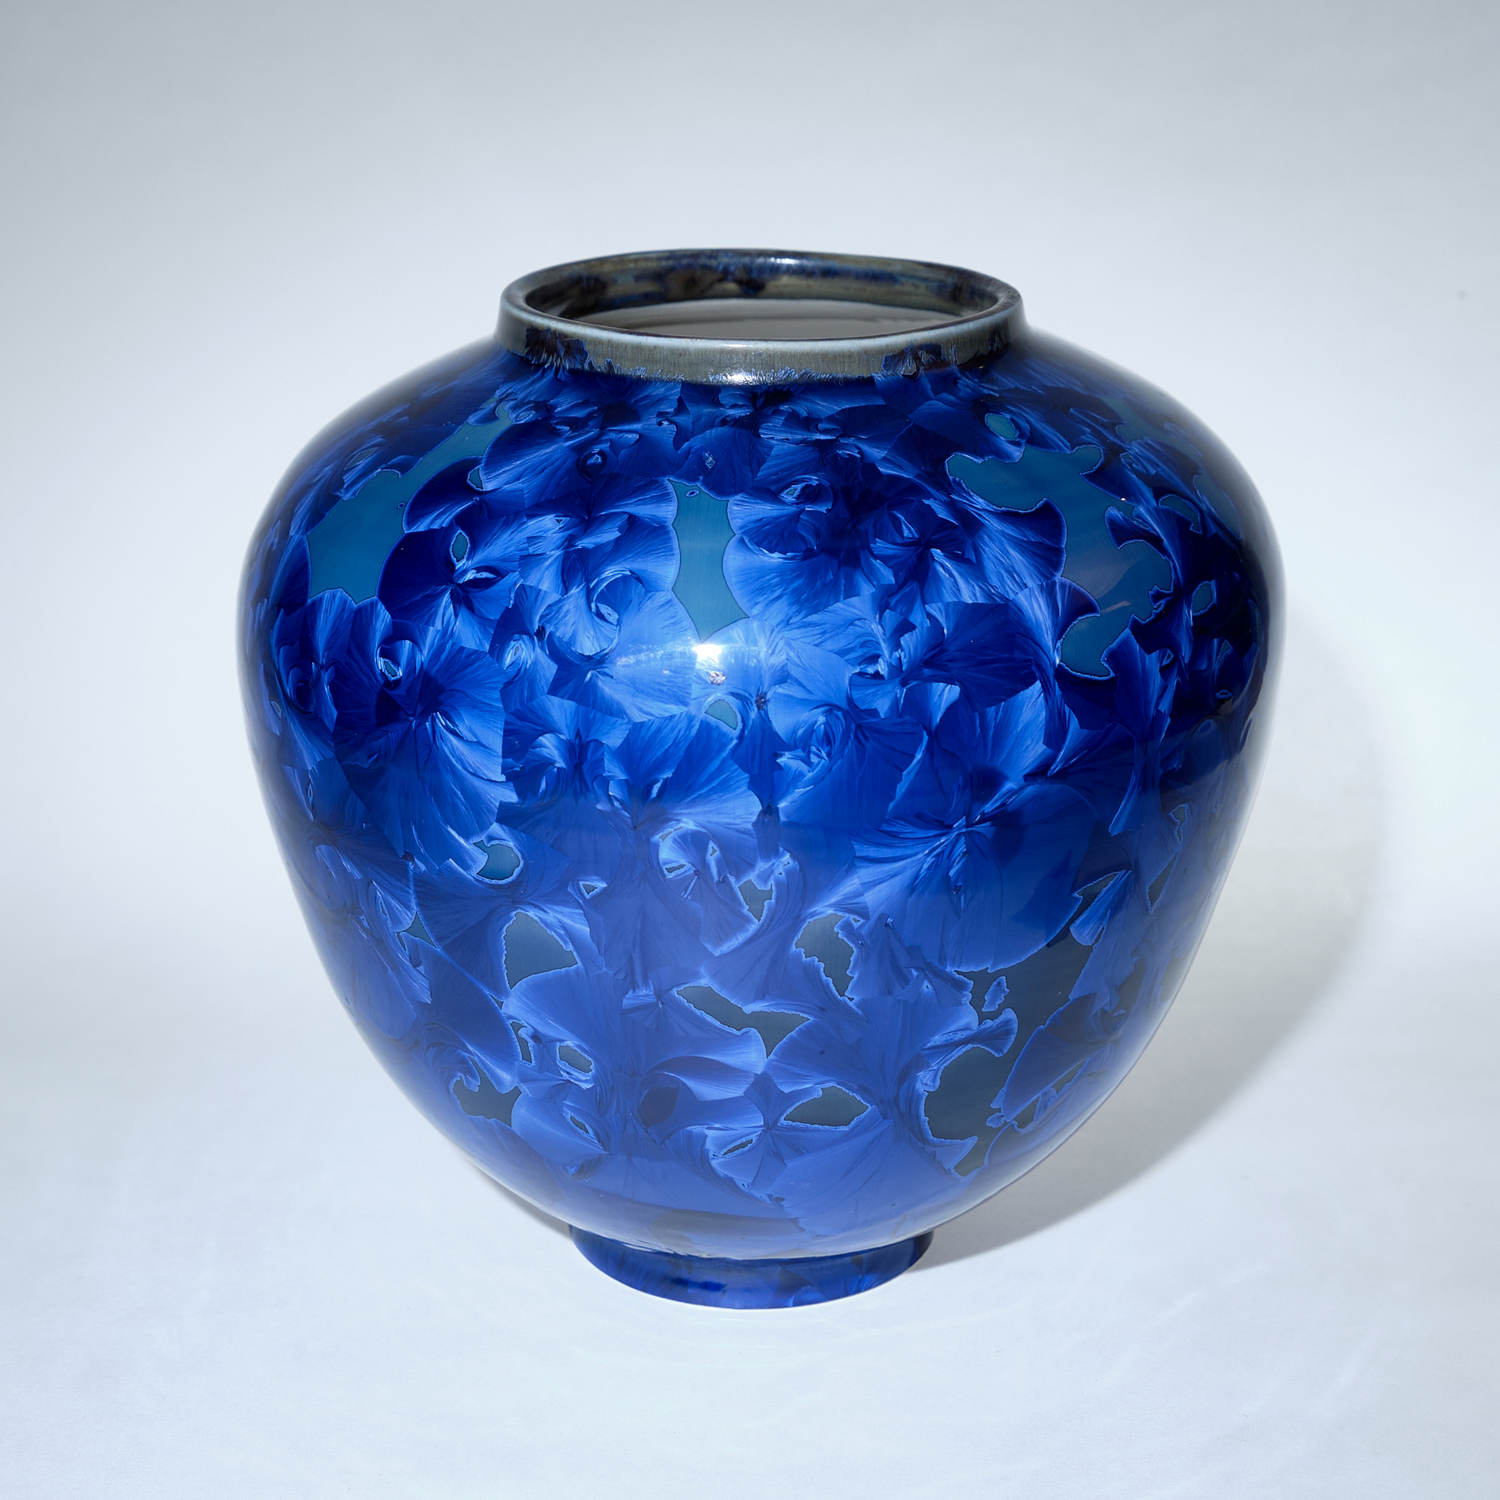 Yumiko Katsuya: Wide Blue Vase Product Image 1 of 1